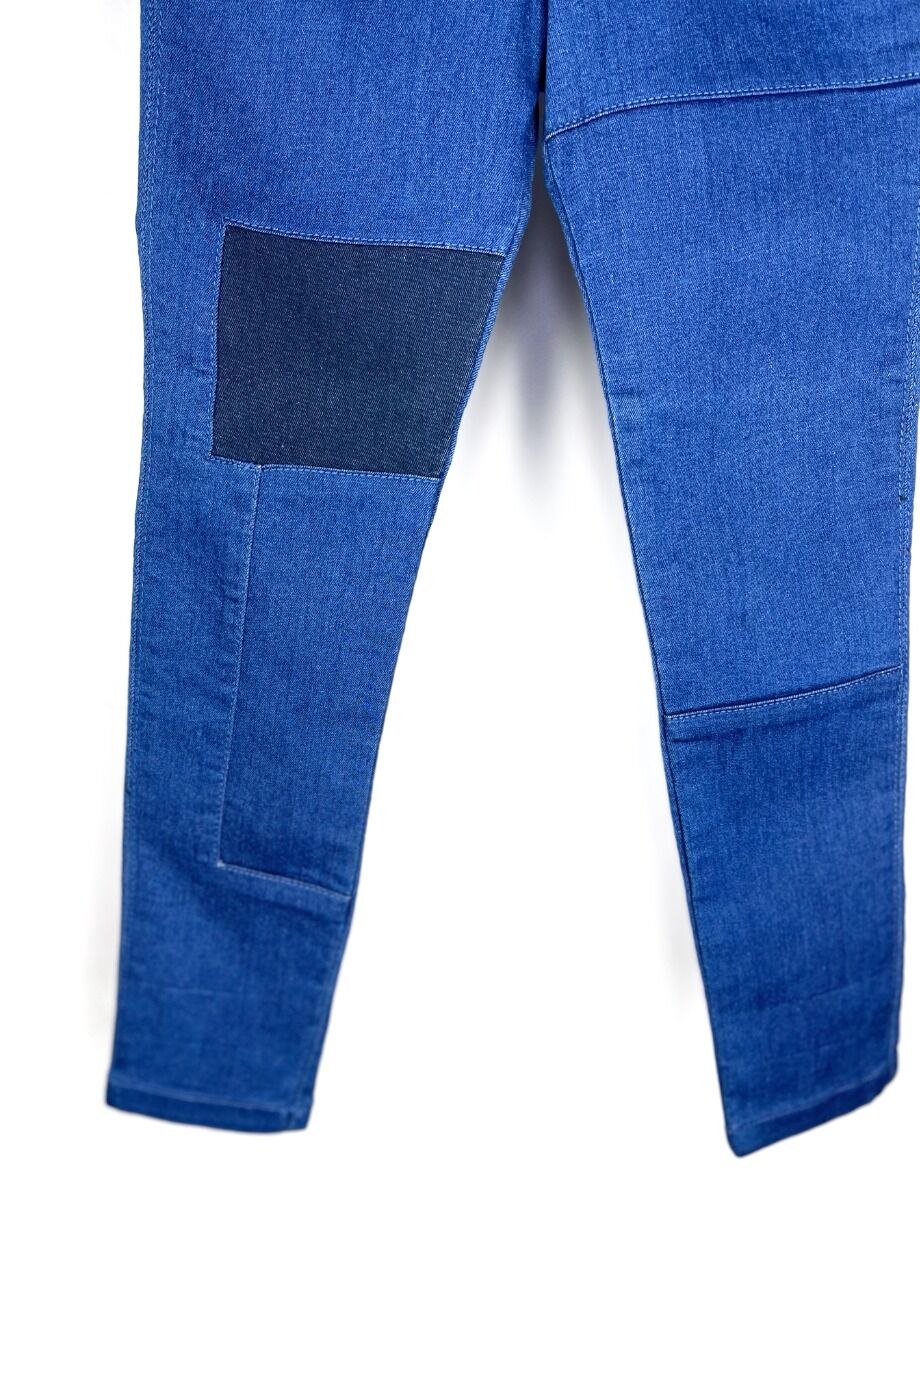 image 2 Детские джинсы синего цвета